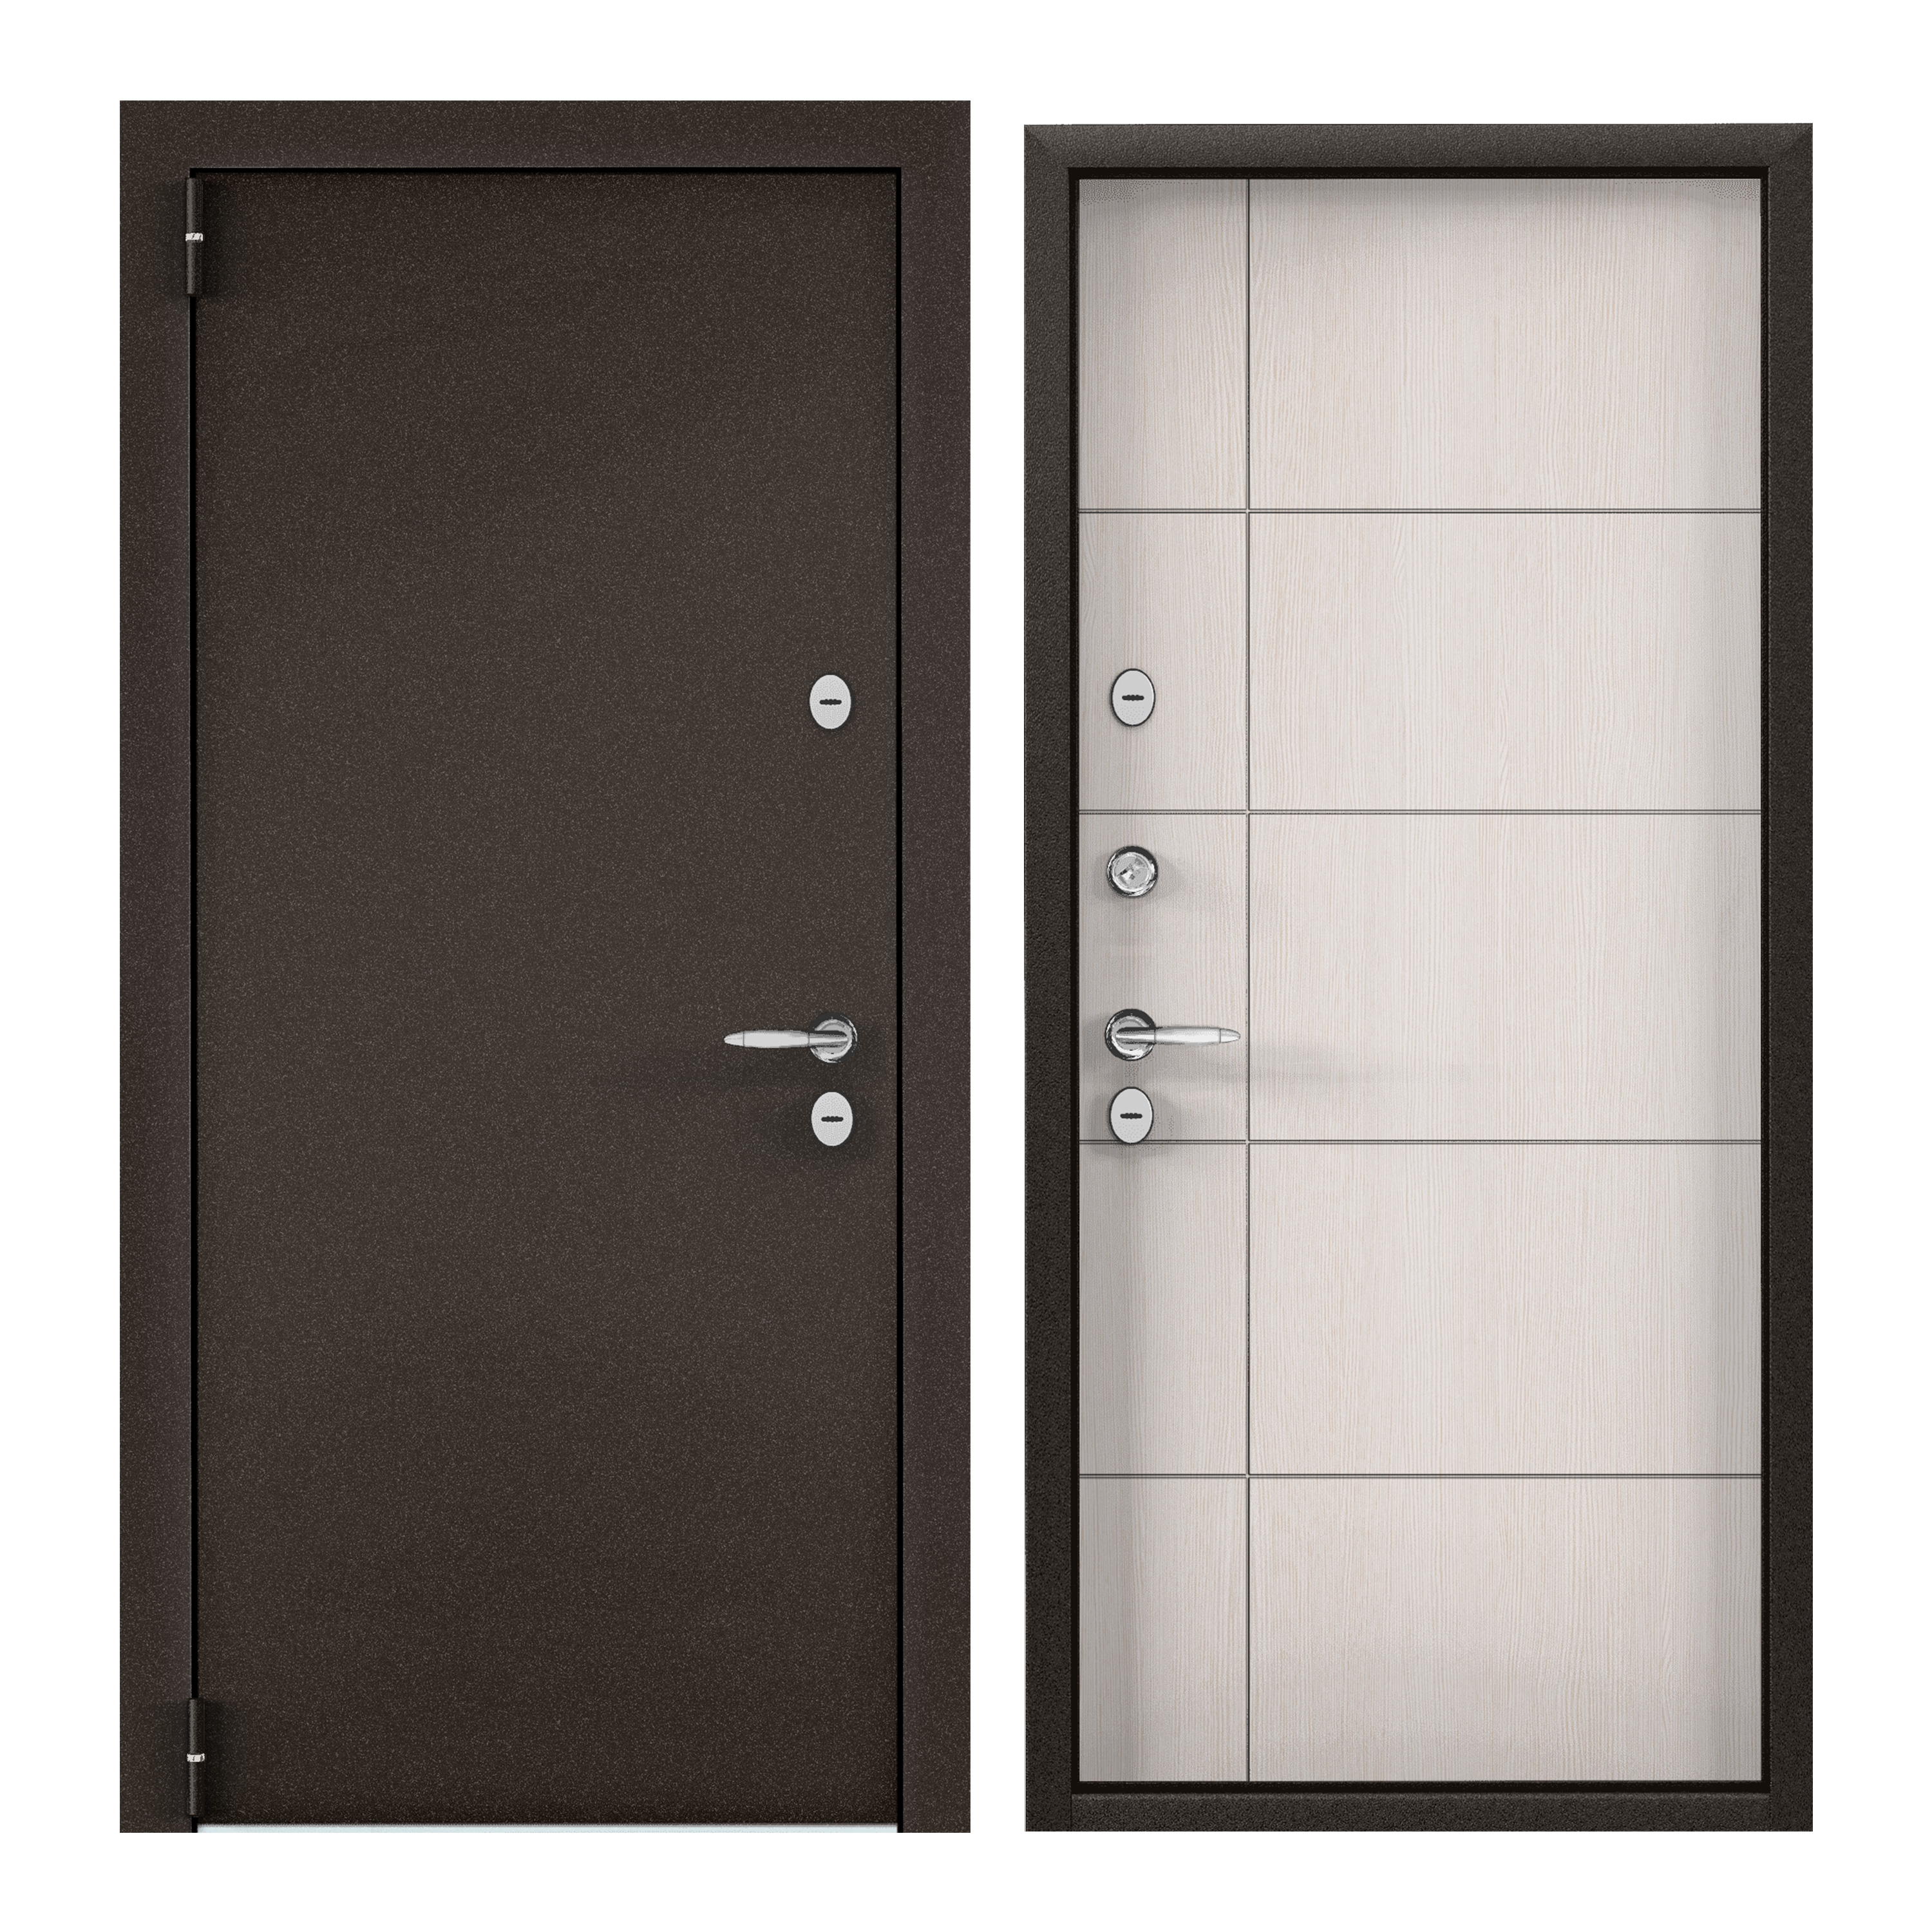 Дверь входная для загородного дома Torex Village 950х2050, левый, коричневый/бежевый